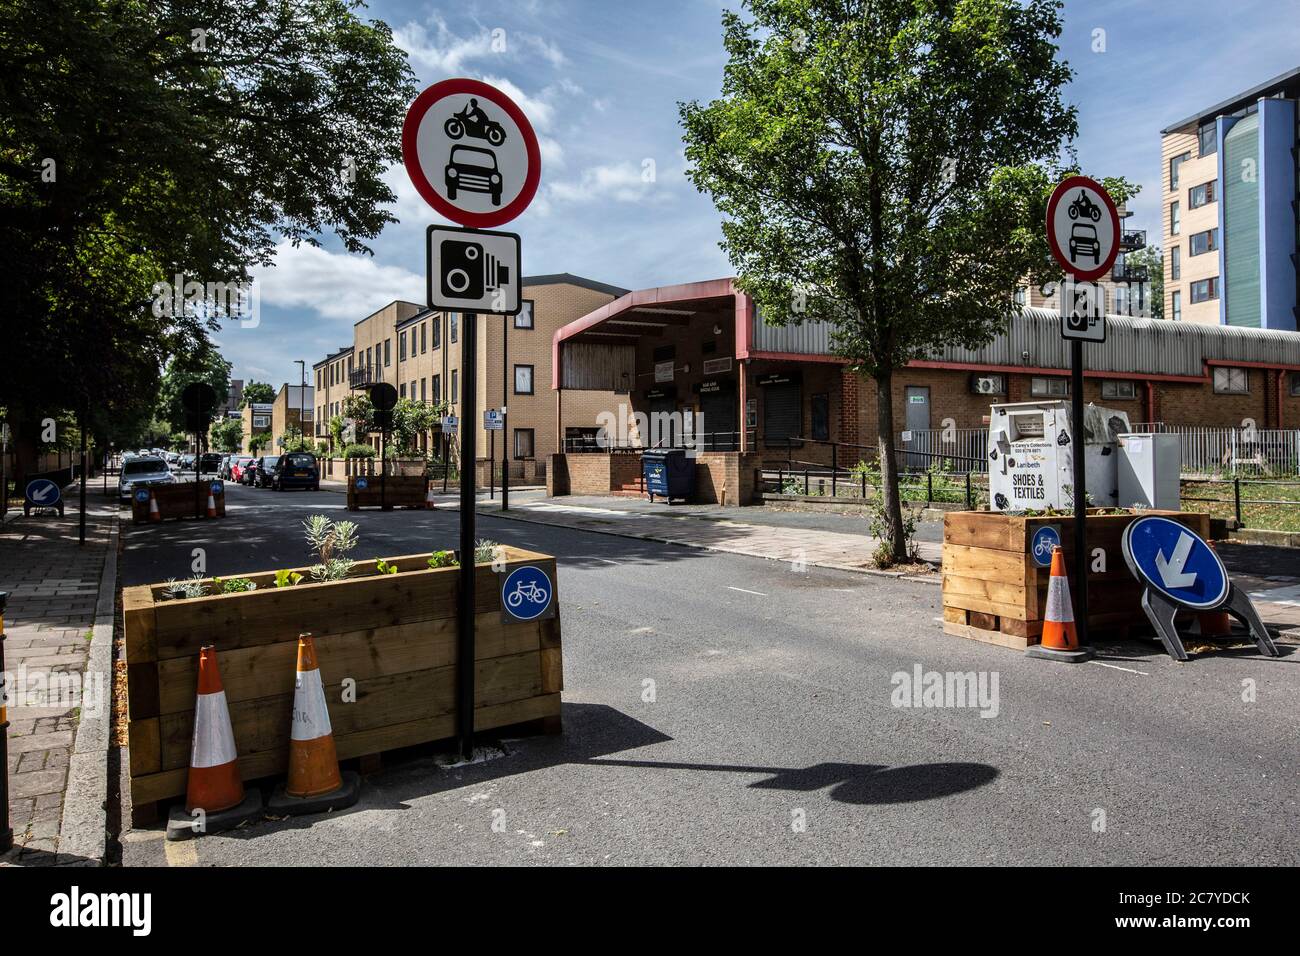 London Straßensperren, um den Verkehr zu beschränken, um "Fahrrad-Autobahnen" zu schaffen und zu fördern Radfahren & Luftverschmutzung auf Matthew's Road, Lambeth, SW2 zu reduzieren Stockfoto